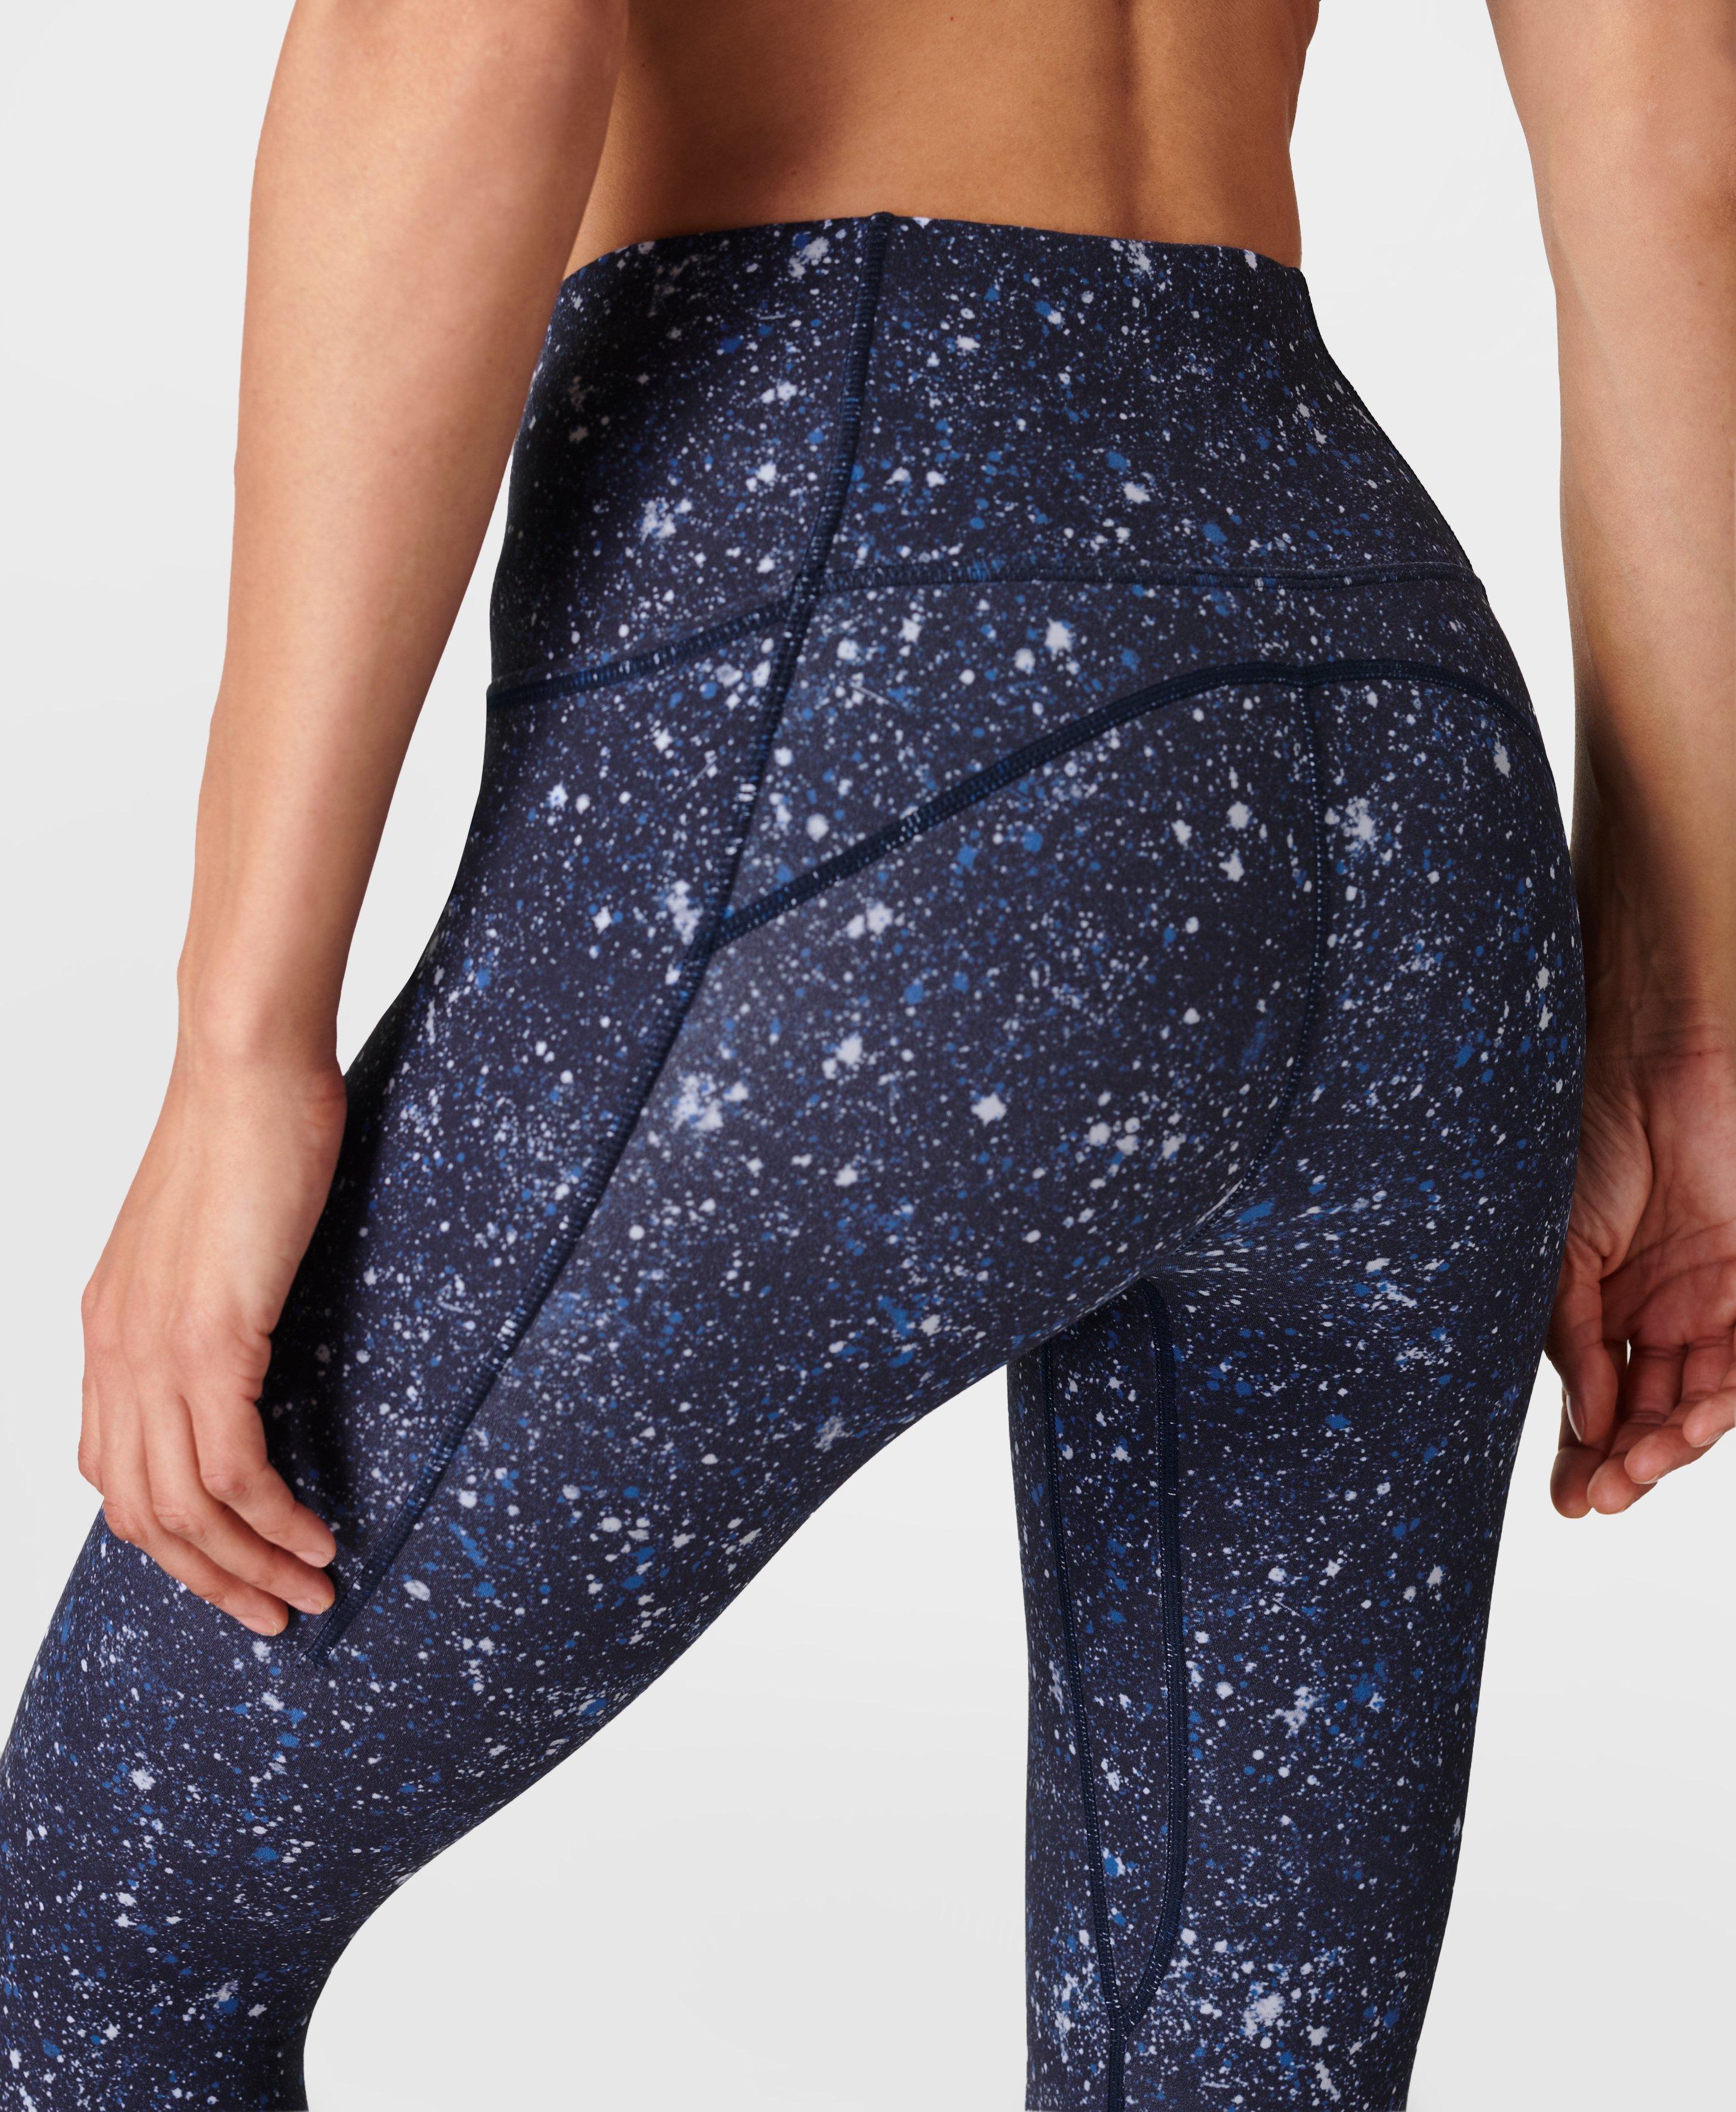 Super Soft Yoga Leggings - Blue Multi Speckle Print, Women's Leggings